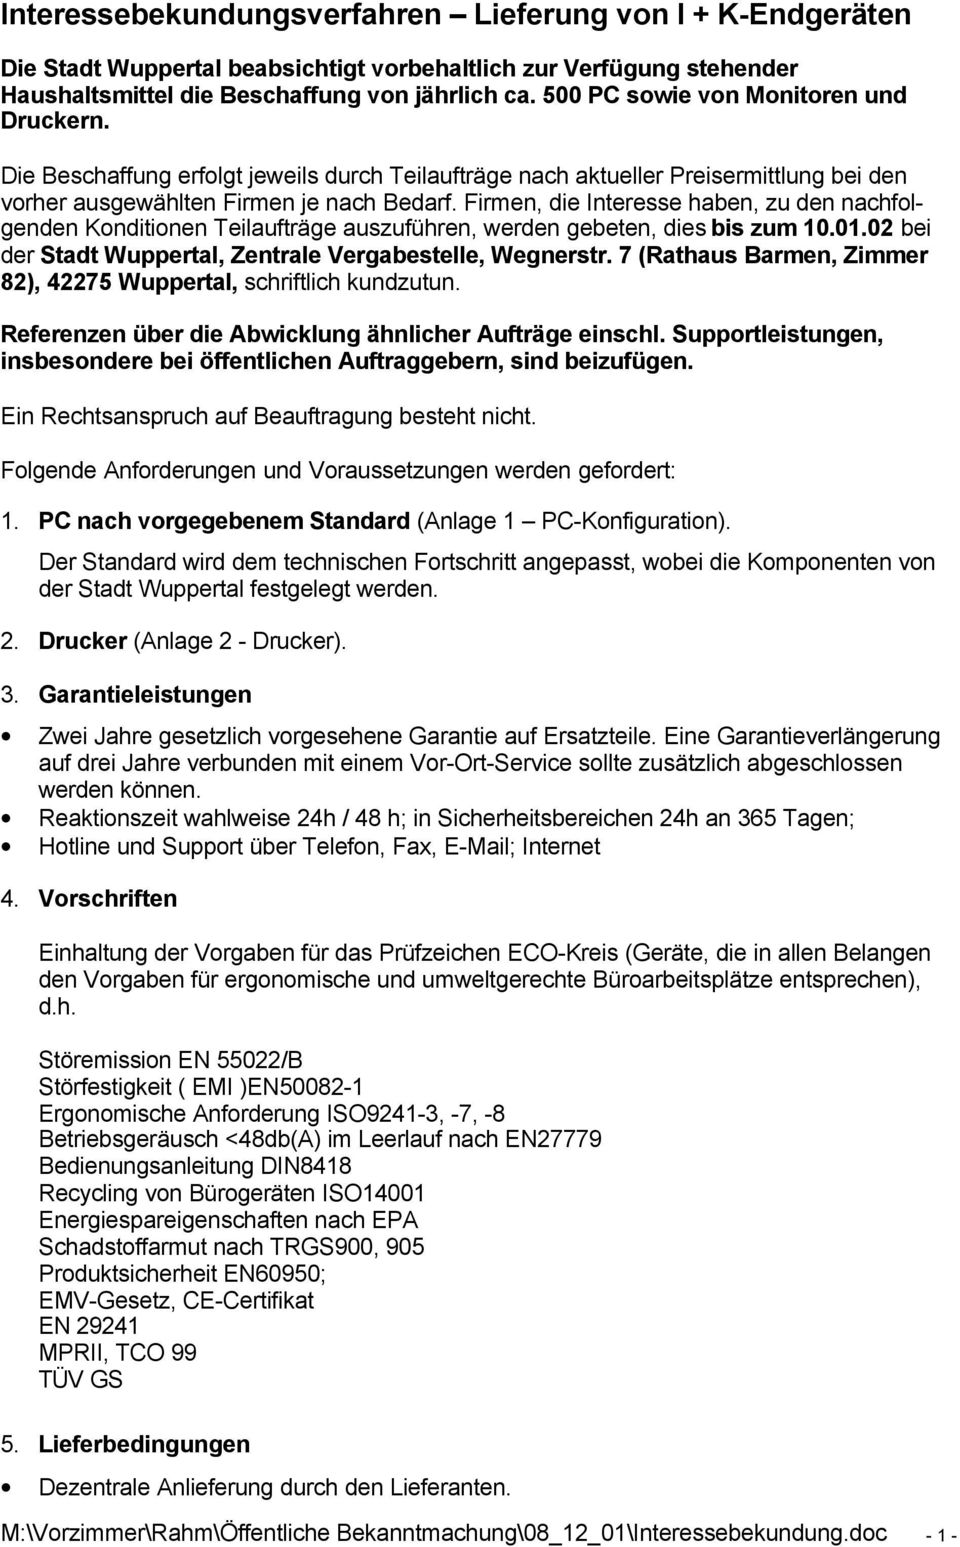 Firmen, die Interesse haben, zu den nachfolgenden Konditionen Teilaufträge auszuführen, werden gebeten, dies bis zum 10.01.02 bei der Stadt Wuppertal, Zentrale Vergabestelle, Wegnerstr.